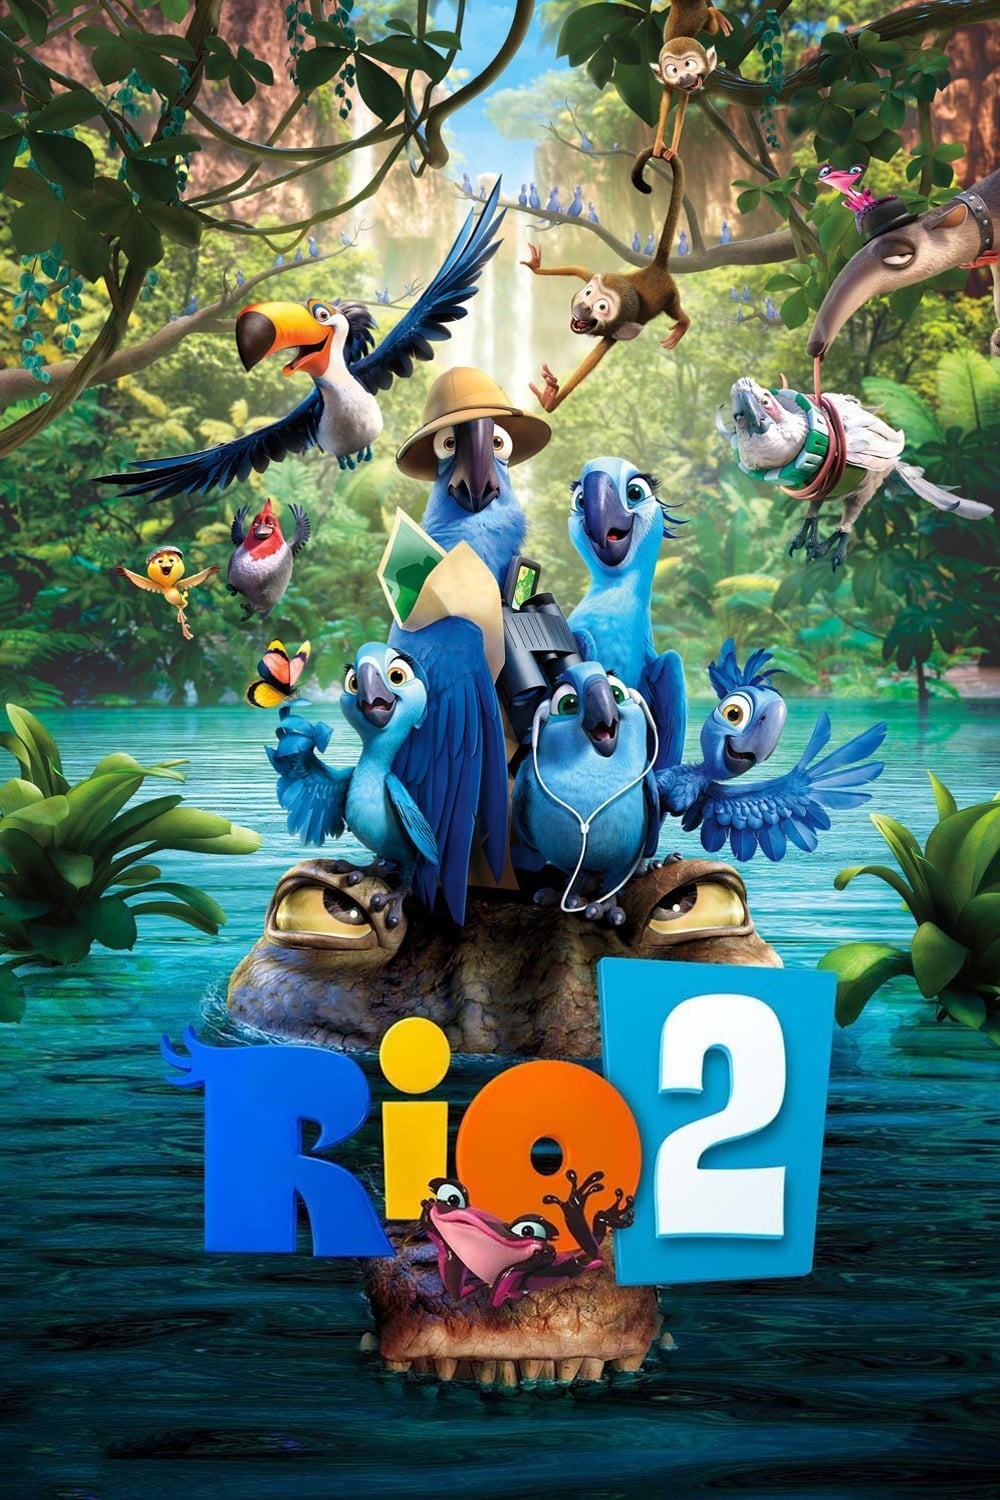 Rio 2 est-il disponible sur Netflix ou autre ?